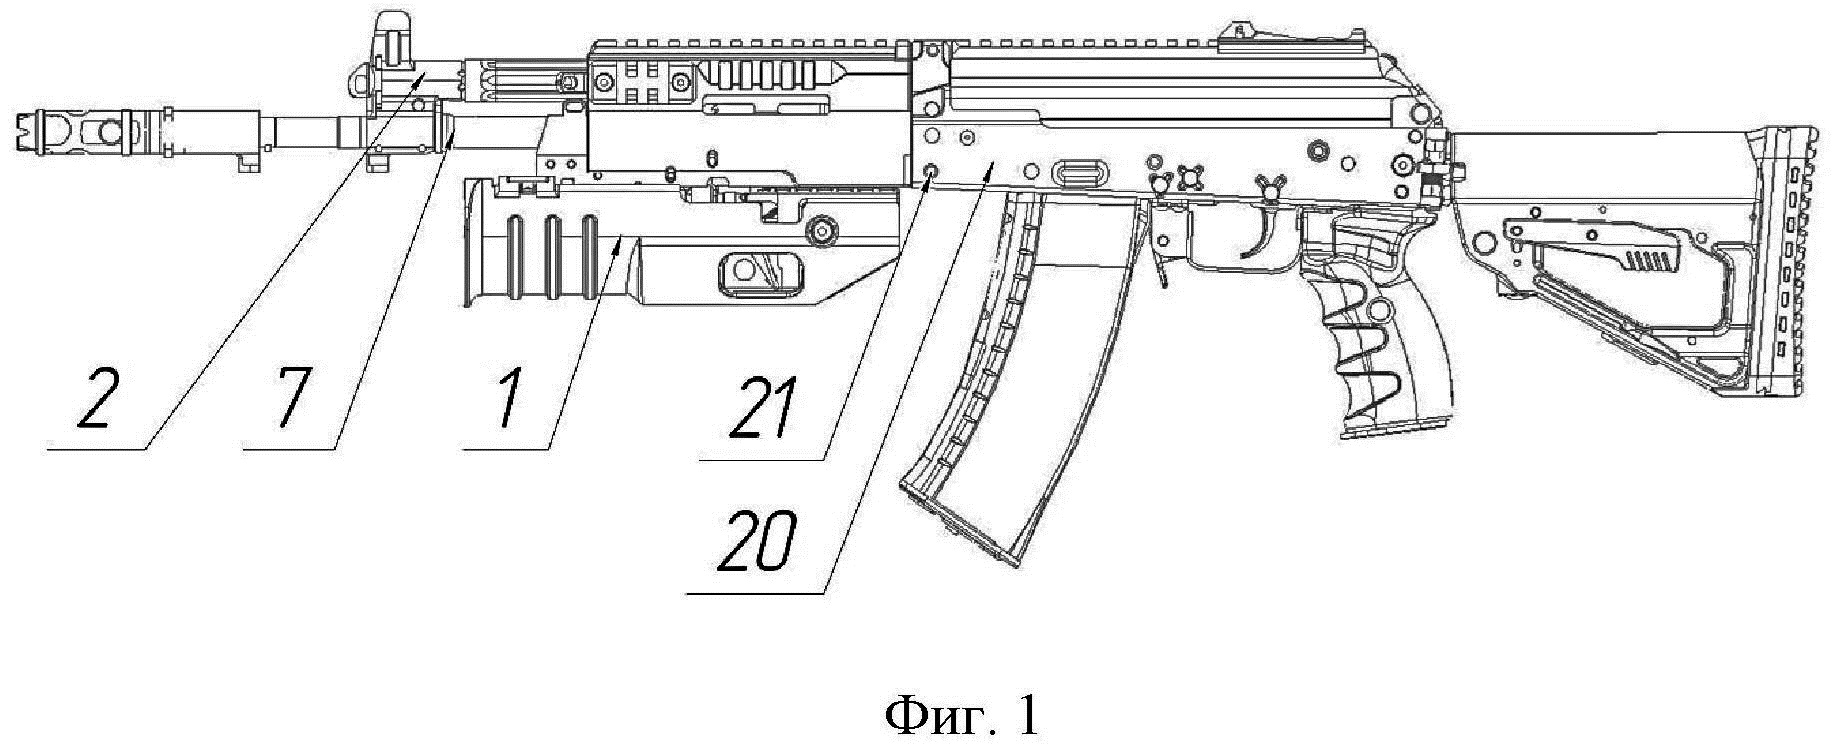 Подствольный гранатомет к стрелковому оружию